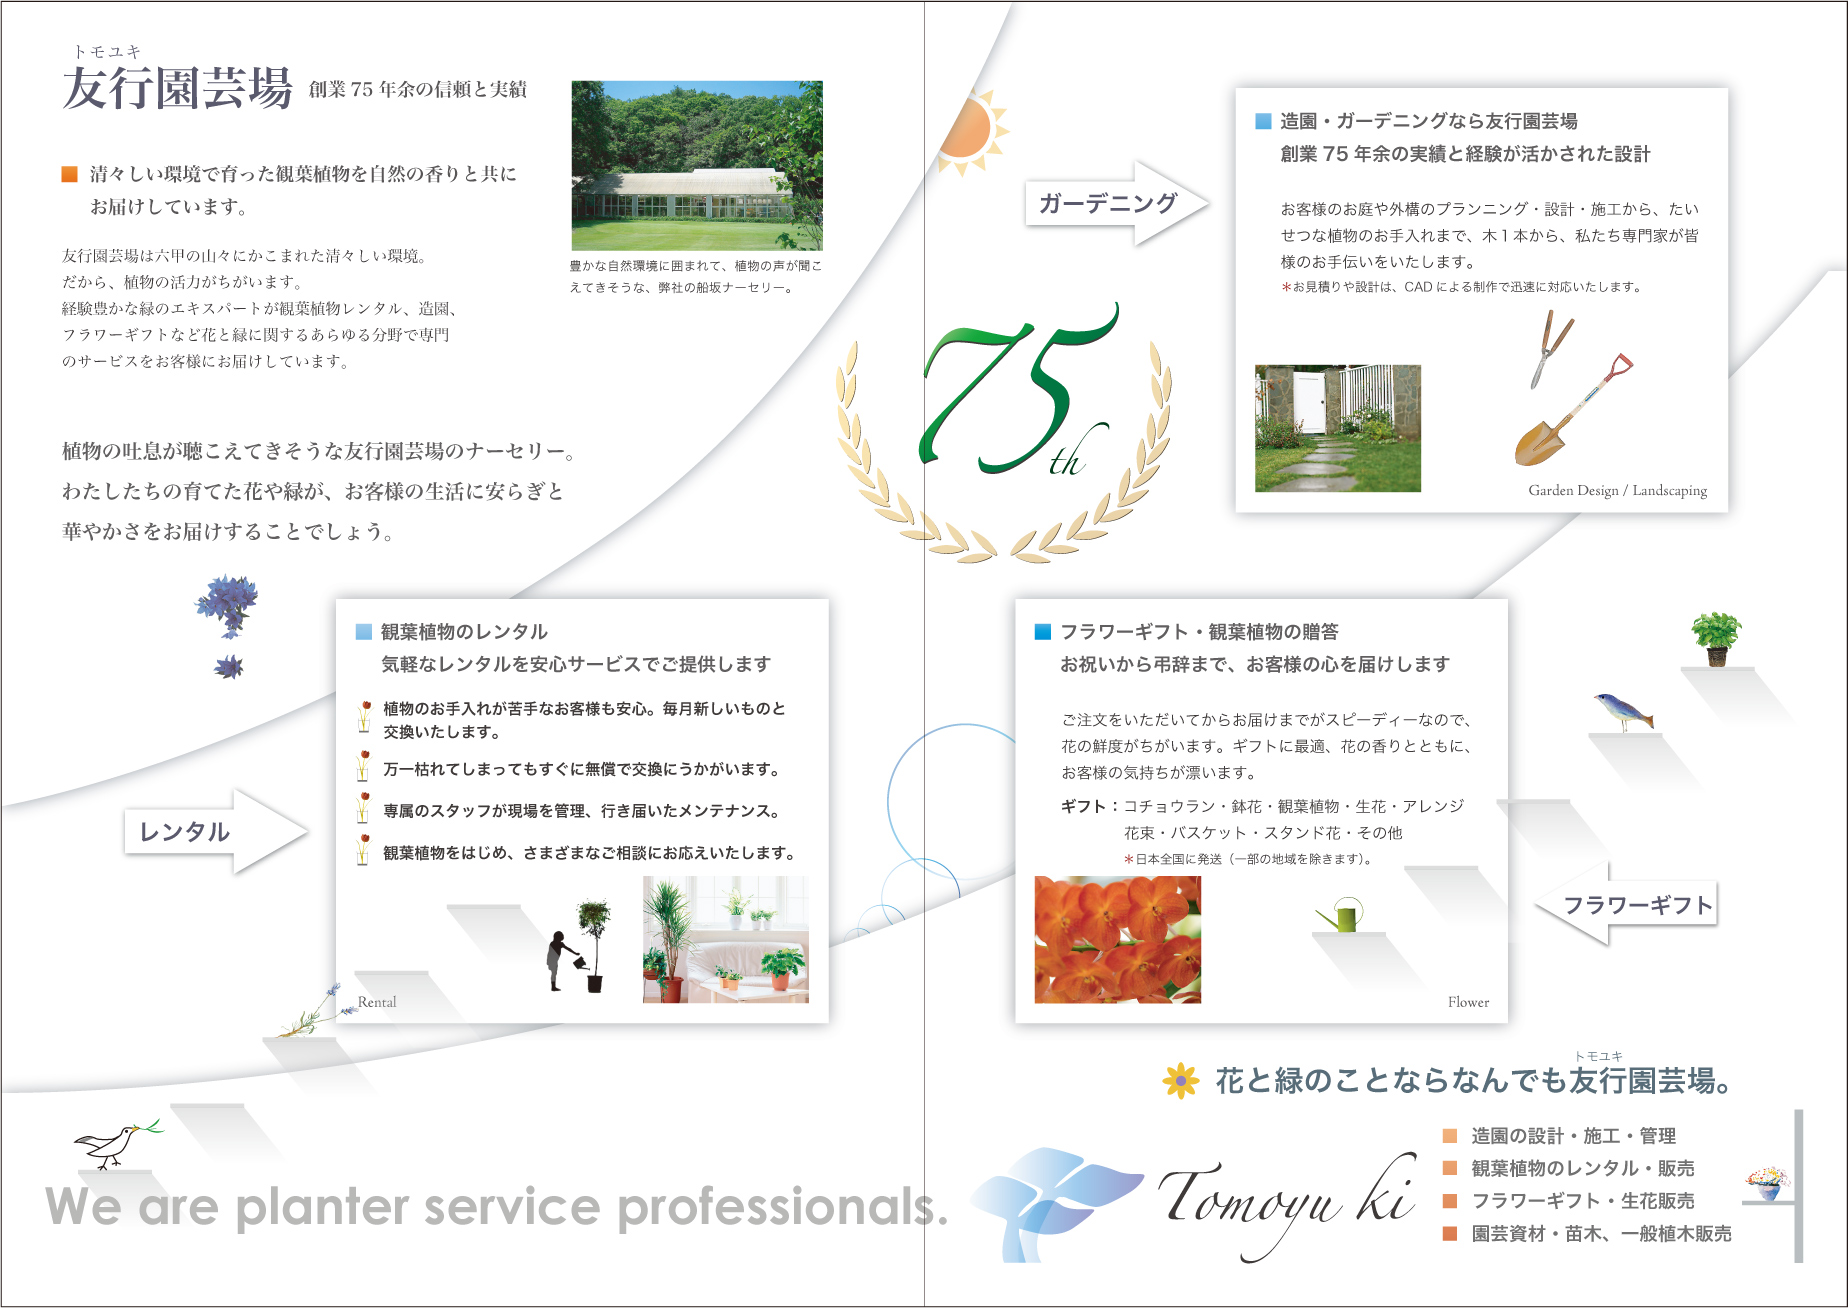 宝塚の園芸取扱カテゴリーの紹介パンフ面の画像です。